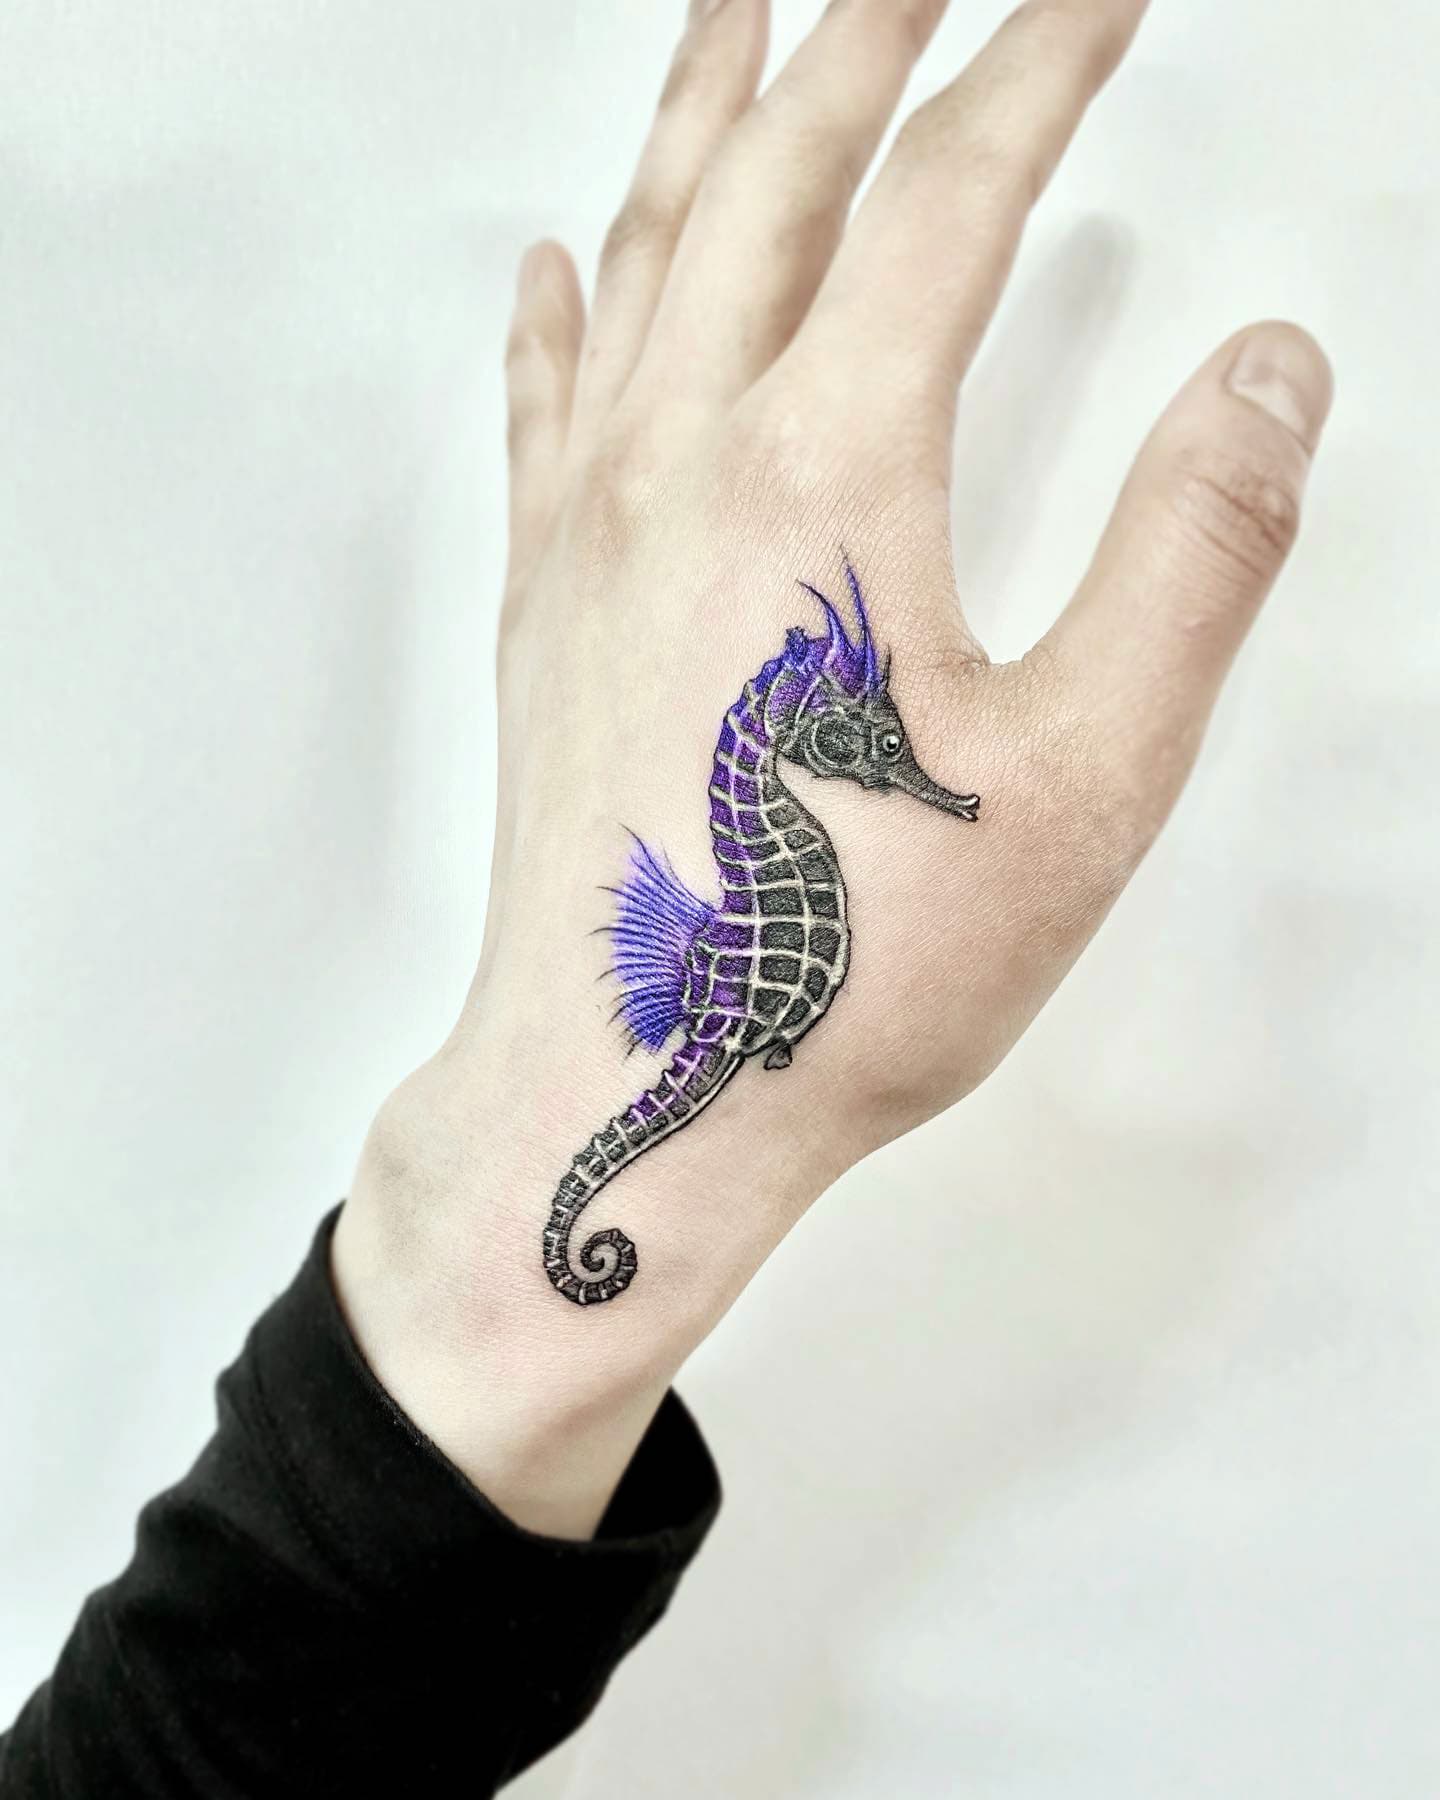 Seahorse tattoo ideas 7